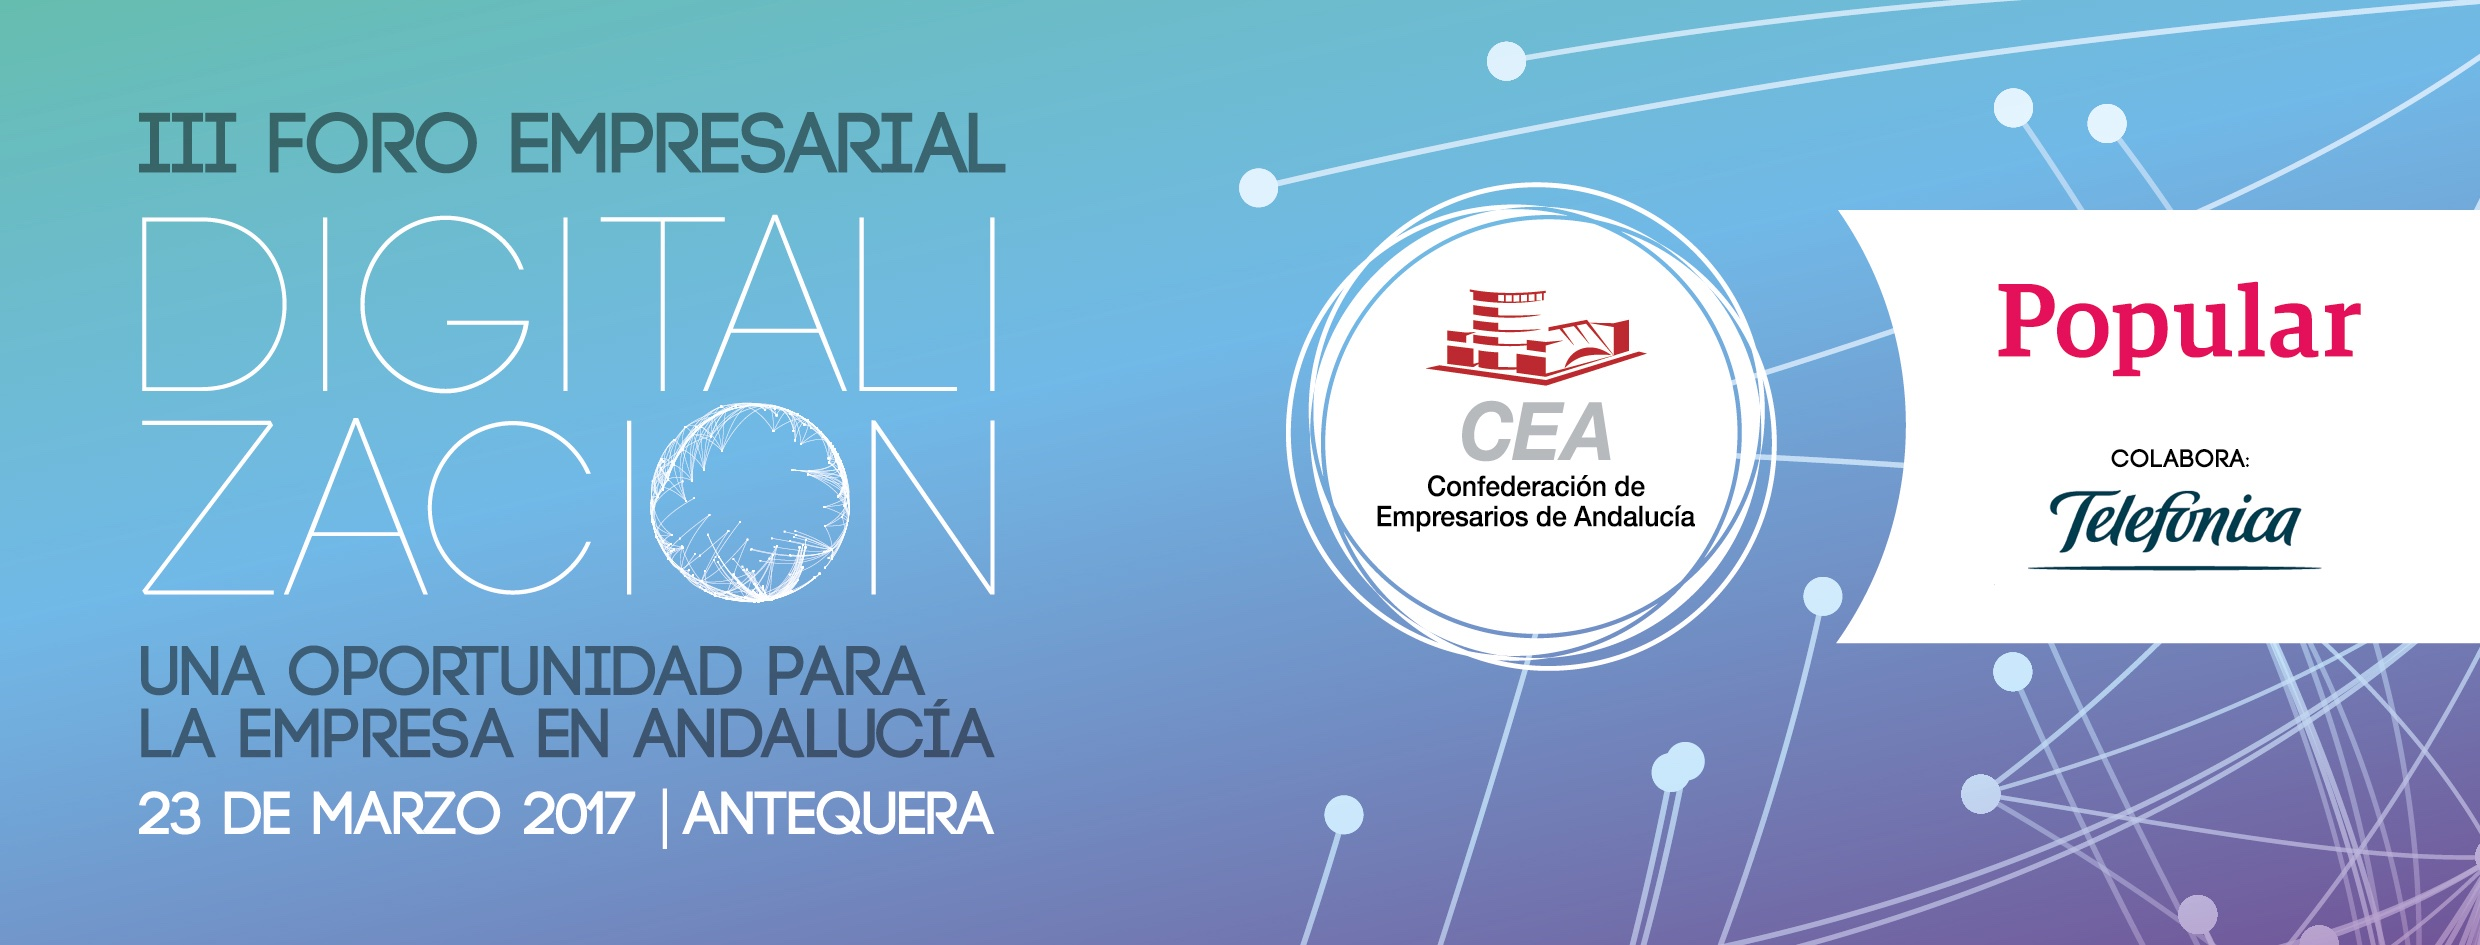 III Foro Empresarial "Digitalización, una oportunidad para la empresa en Andalucía"